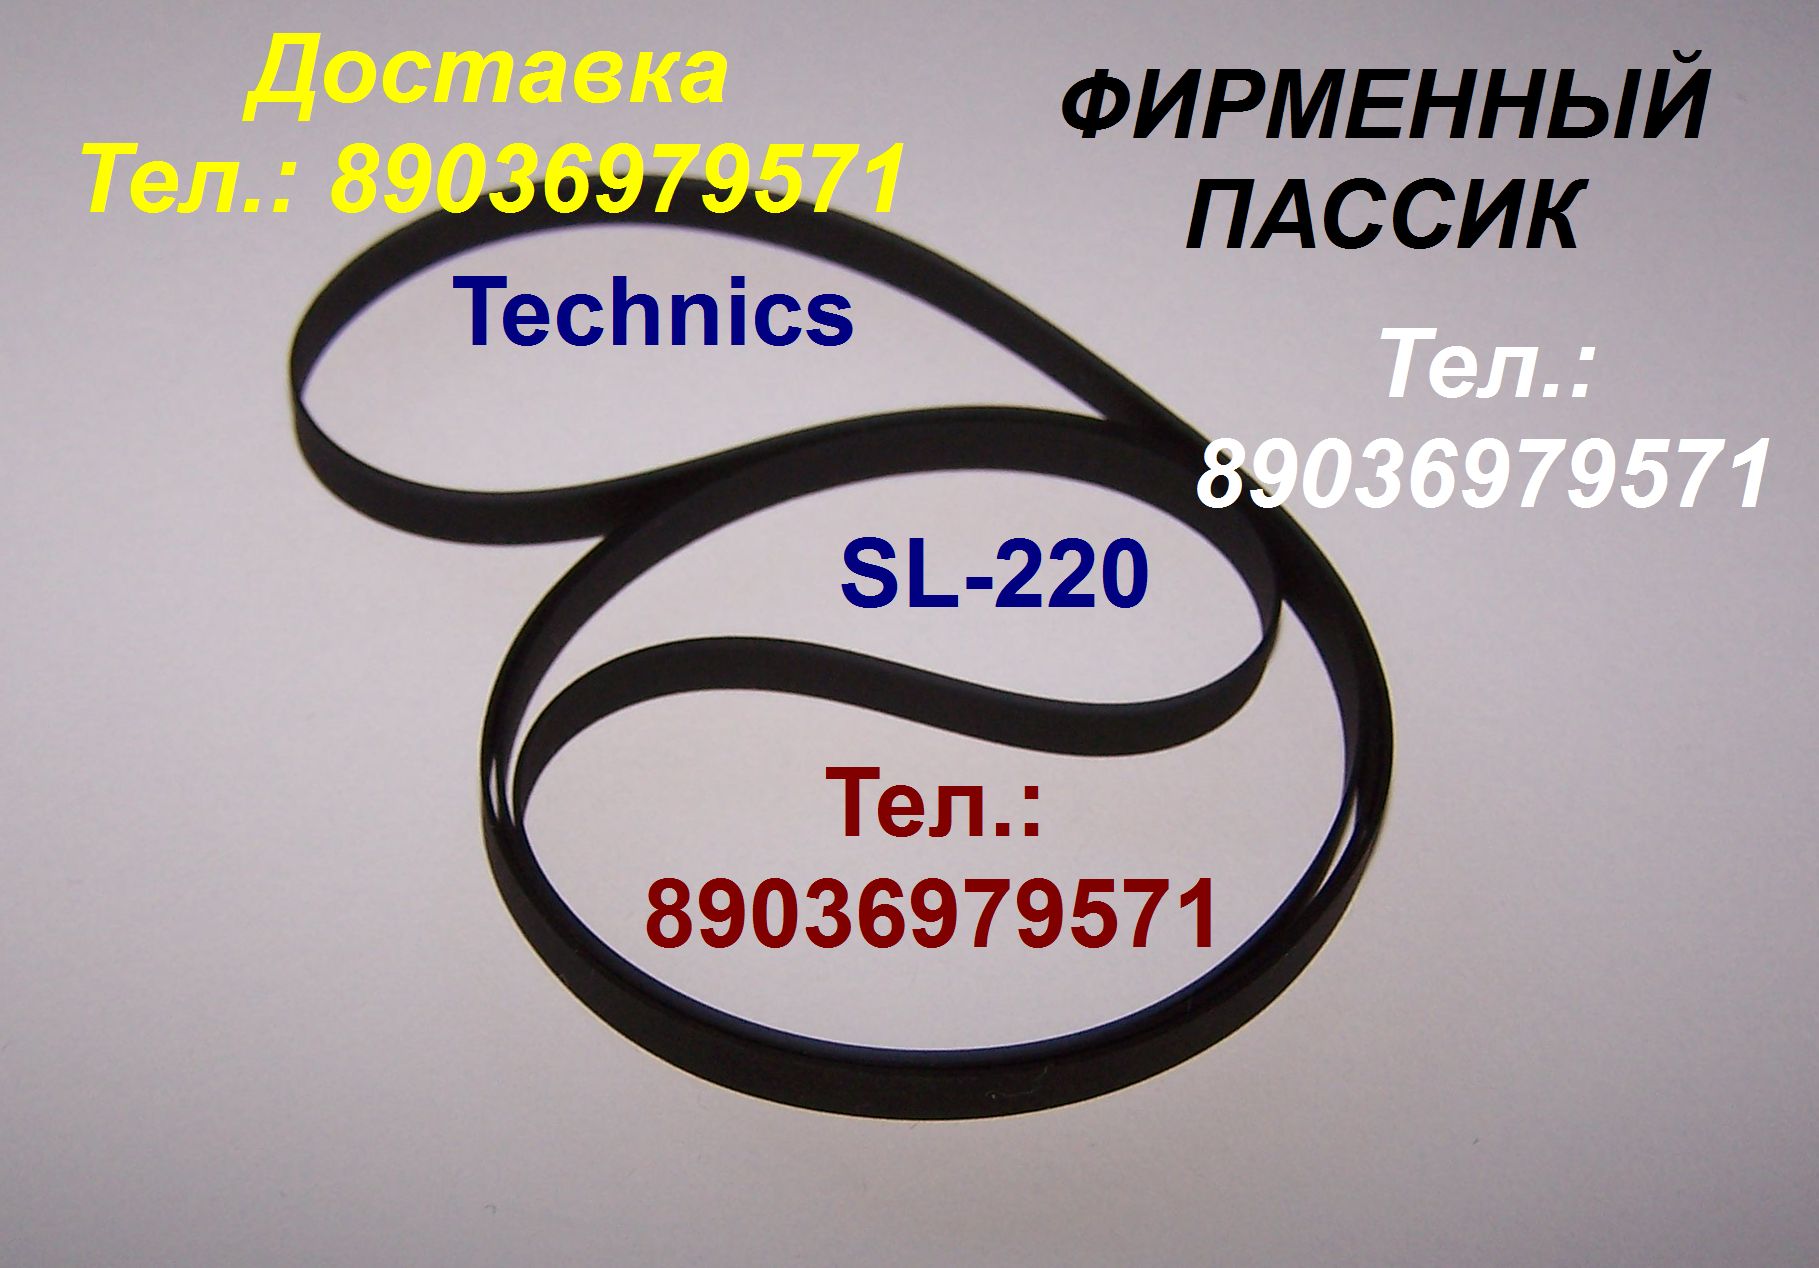 новый пассик для Technics SL-220 ремень пасик для Техникс SL220  в городе Москва, фото 1, телефон продавца: +7 (903) 697-95-71